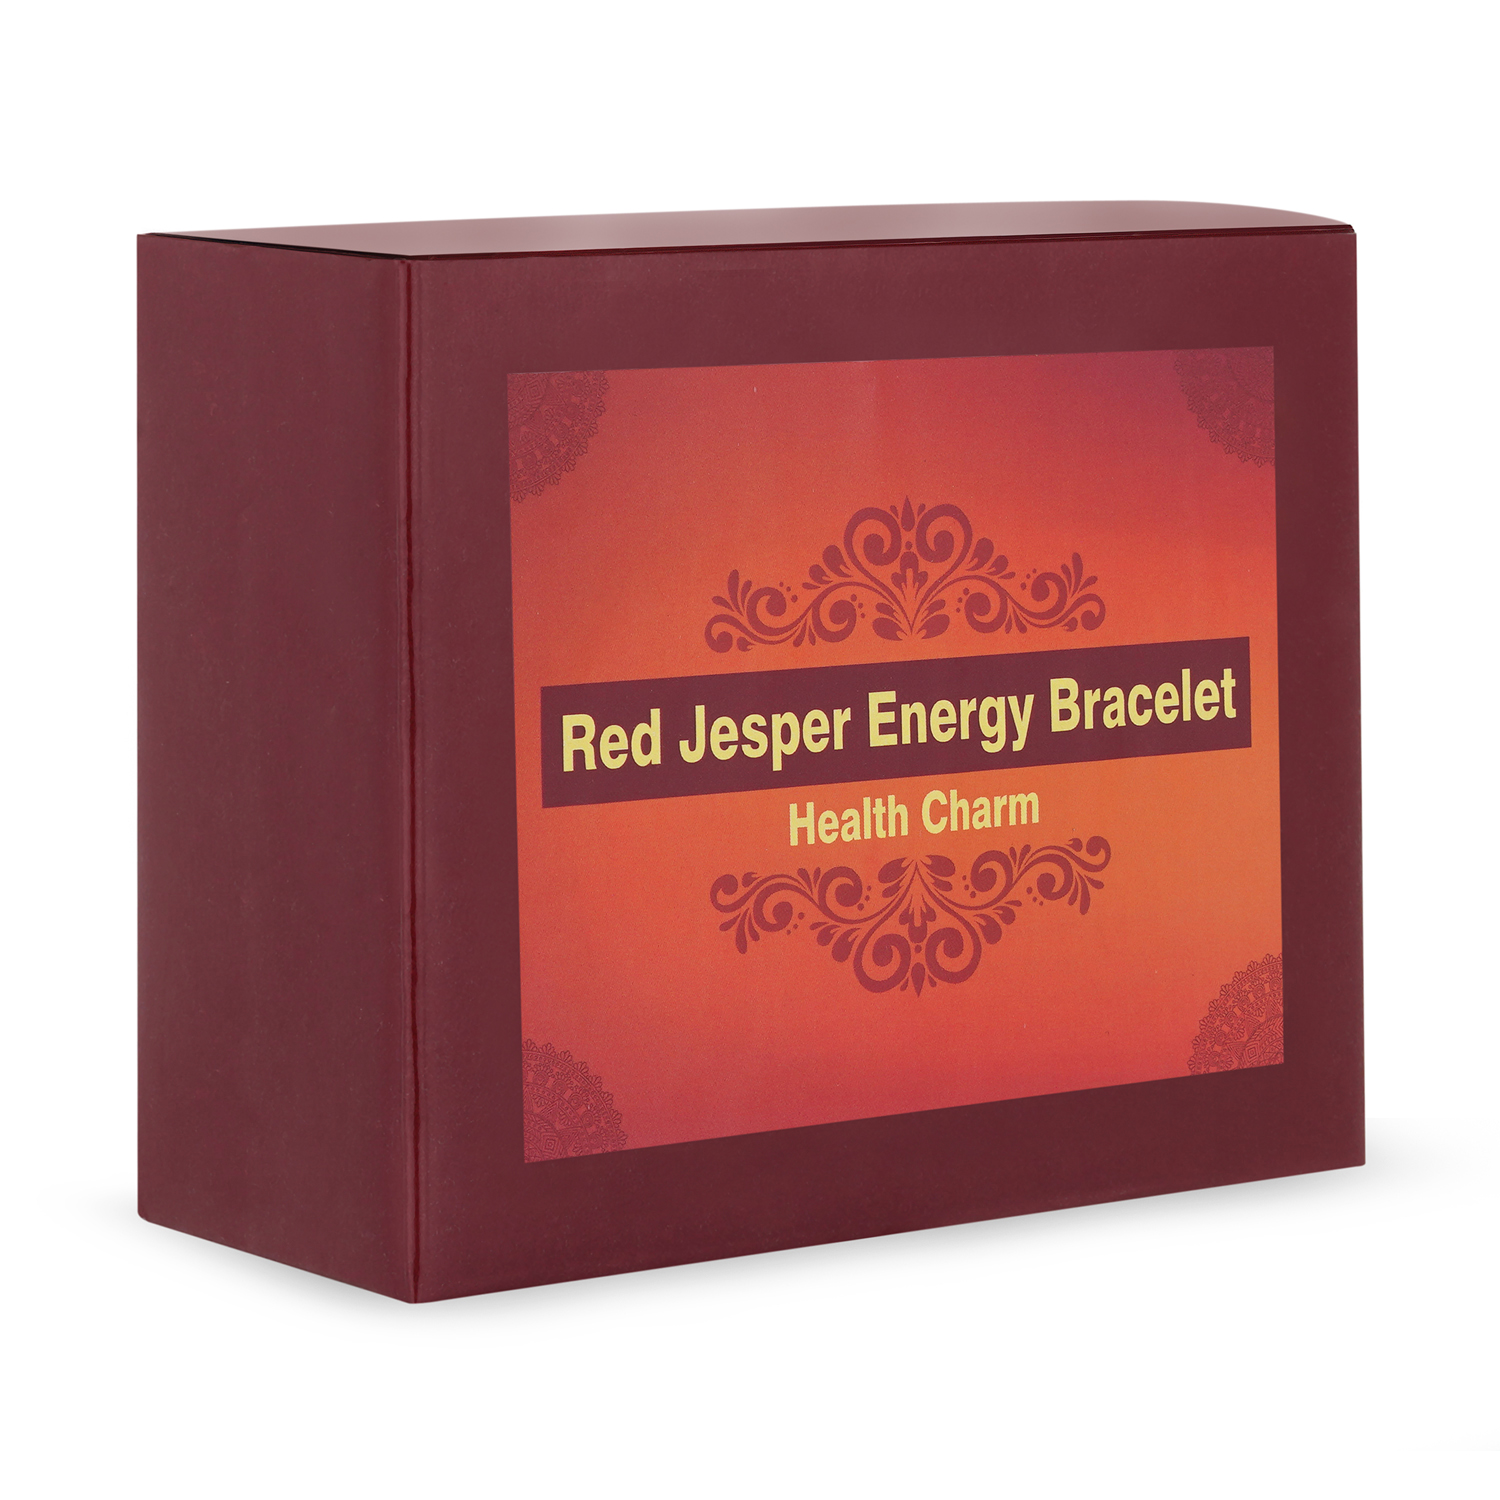 Red jesper energy bracelet